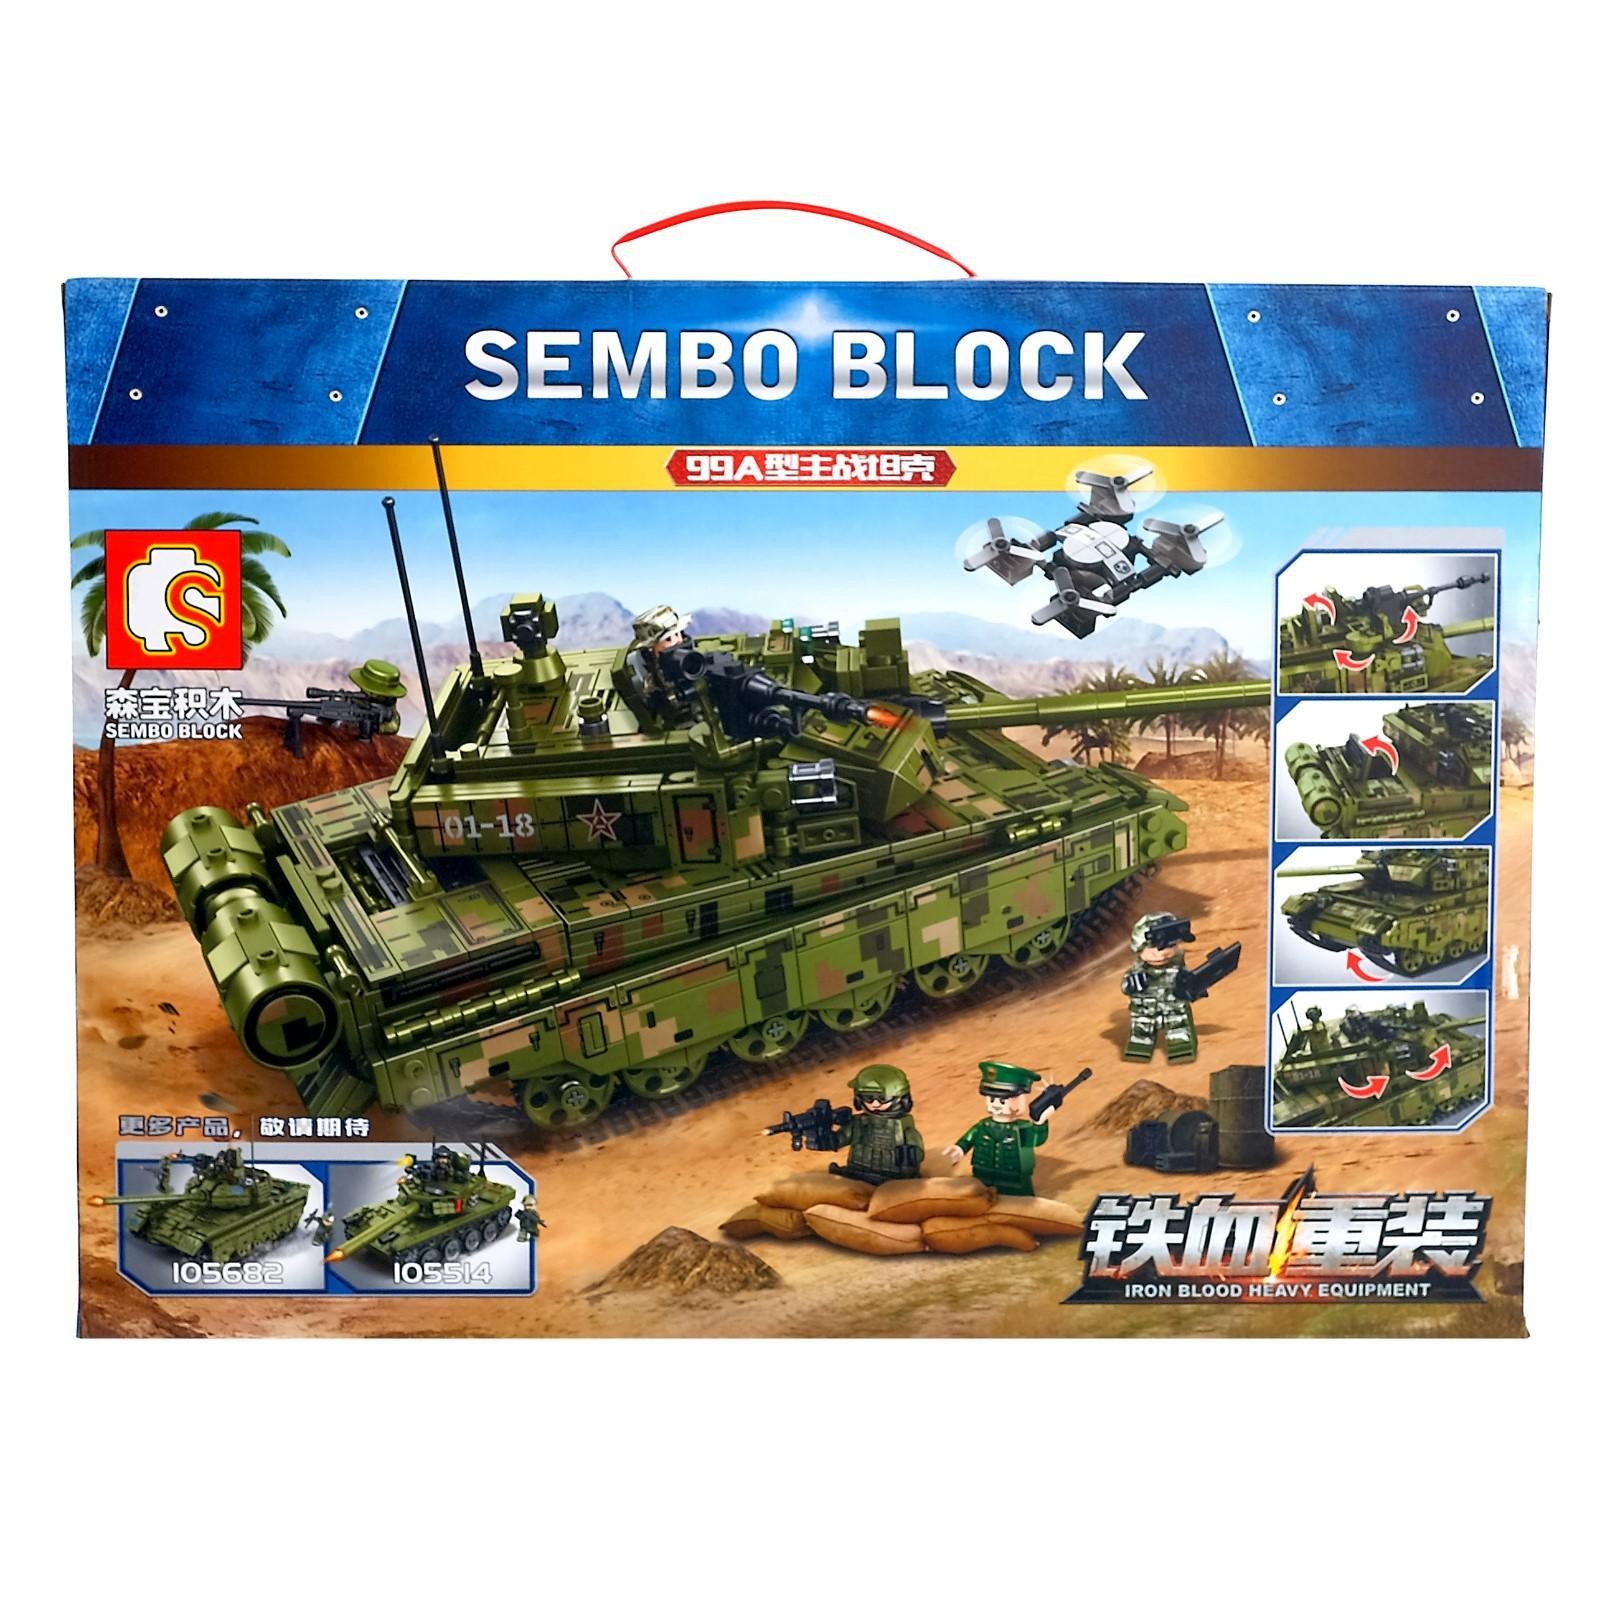 Конструктор Sembo Block «Основной боевой танк Тип 99А» 105751 / 1144 деталей